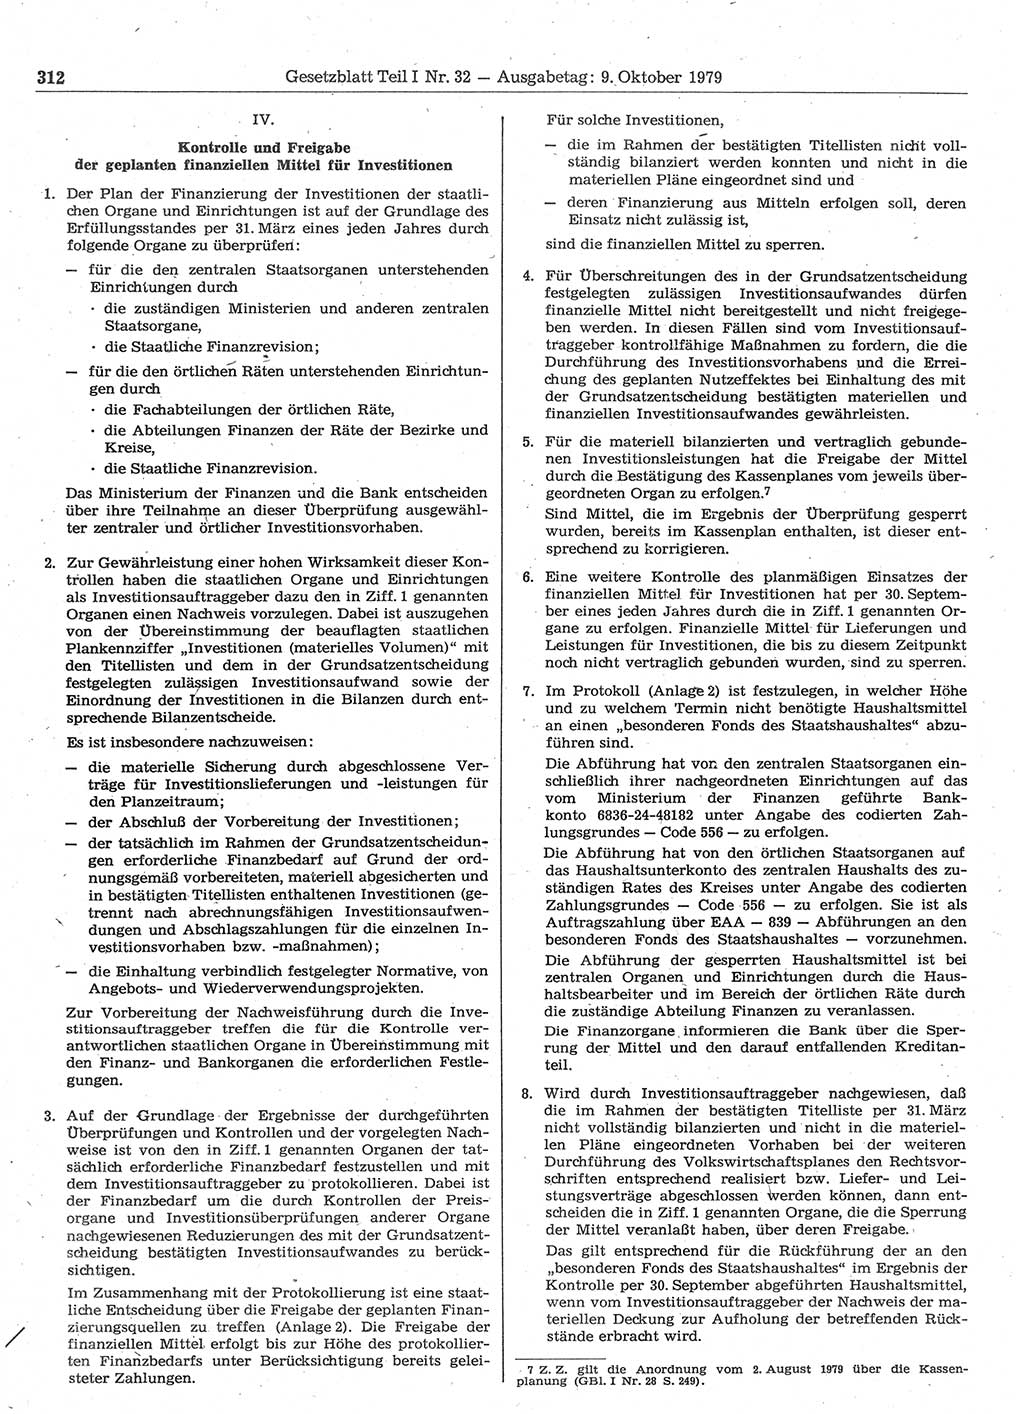 Gesetzblatt (GBl.) der Deutschen Demokratischen Republik (DDR) Teil Ⅰ 1979, Seite 312 (GBl. DDR Ⅰ 1979, S. 312)